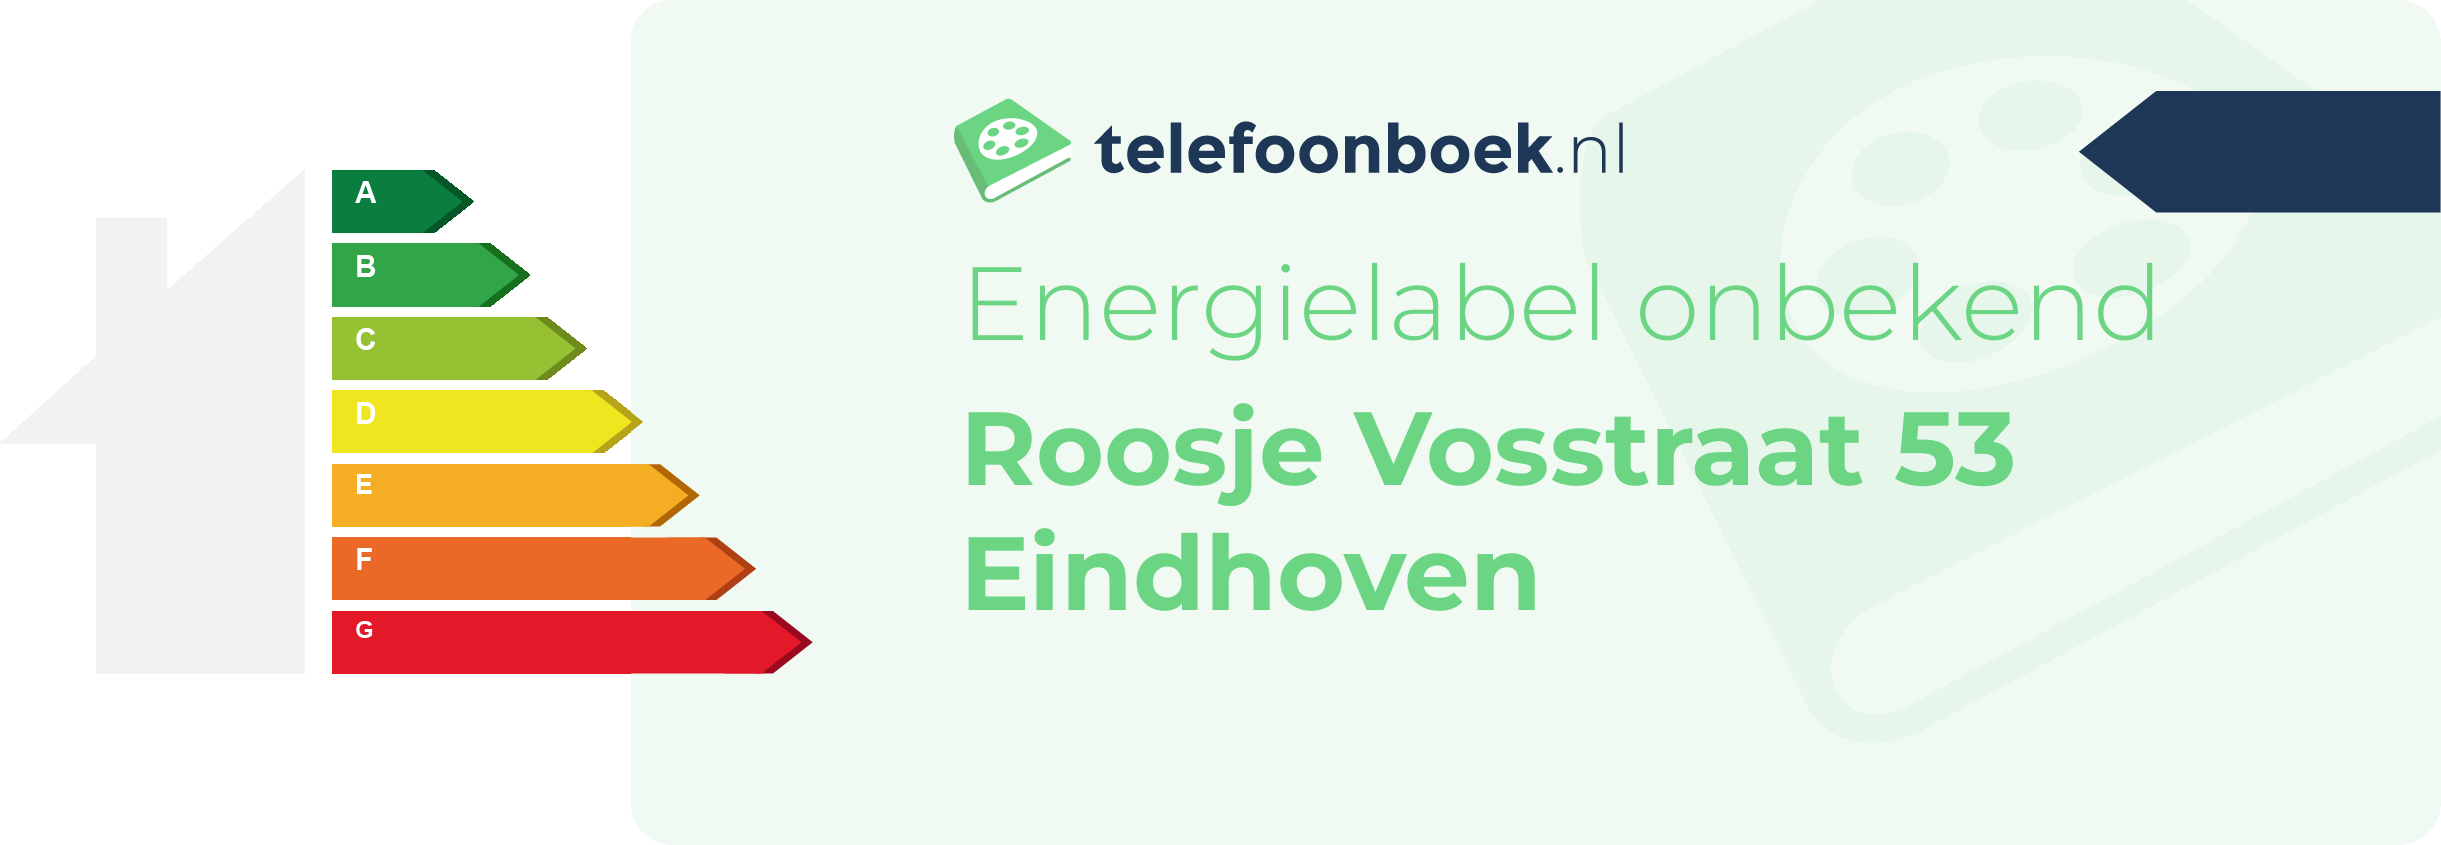 Energielabel Roosje Vosstraat 53 Eindhoven